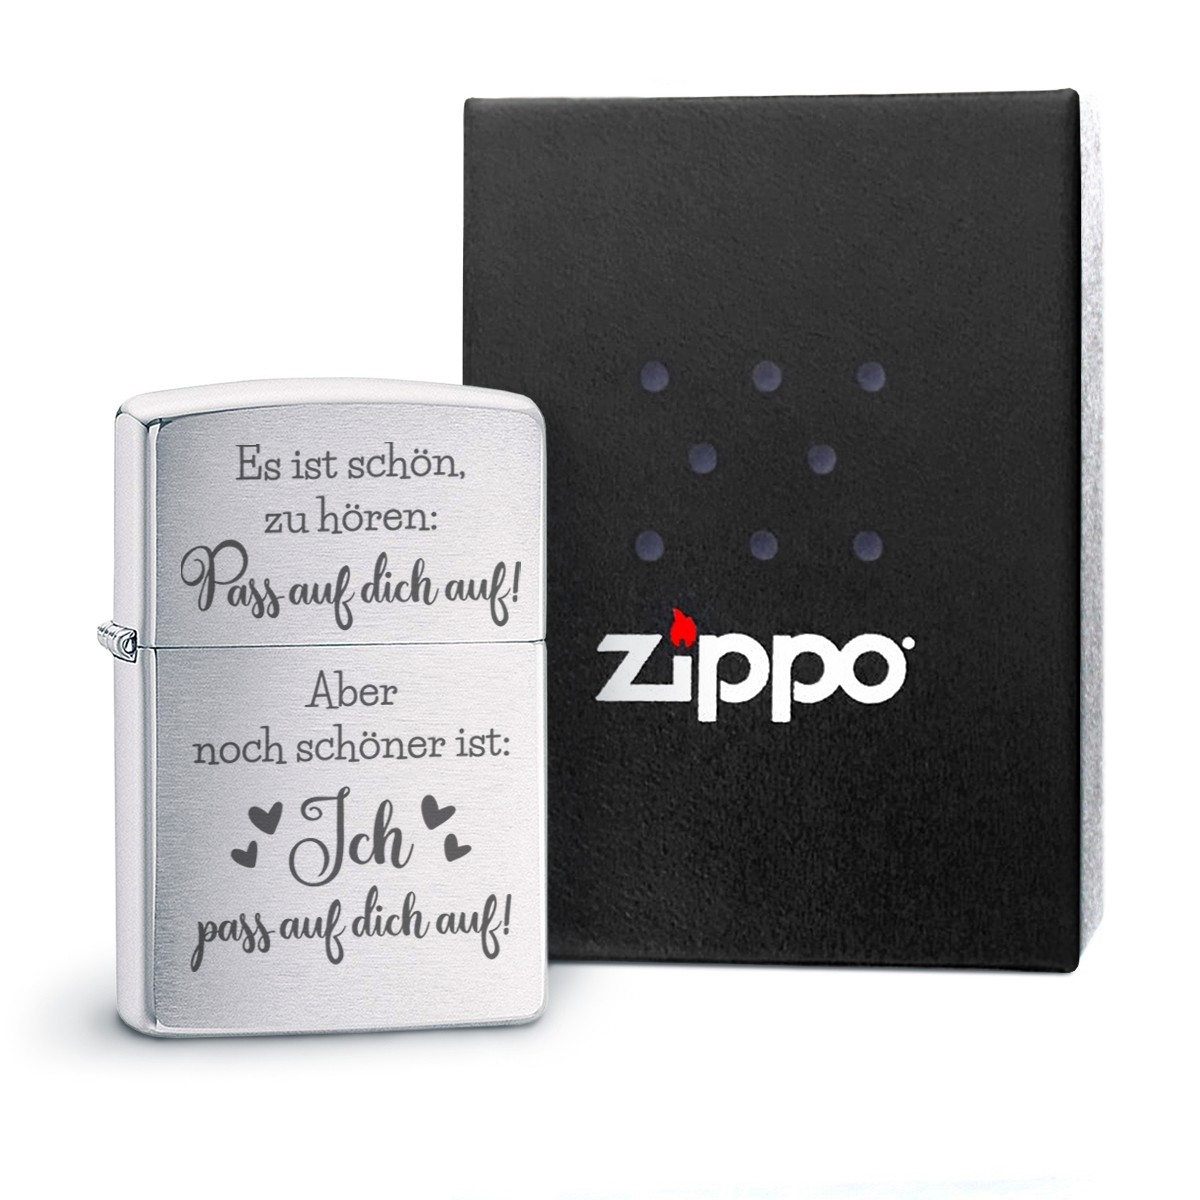 Original Zippo Benzinfeuerzeug: Pass auf dich auf!